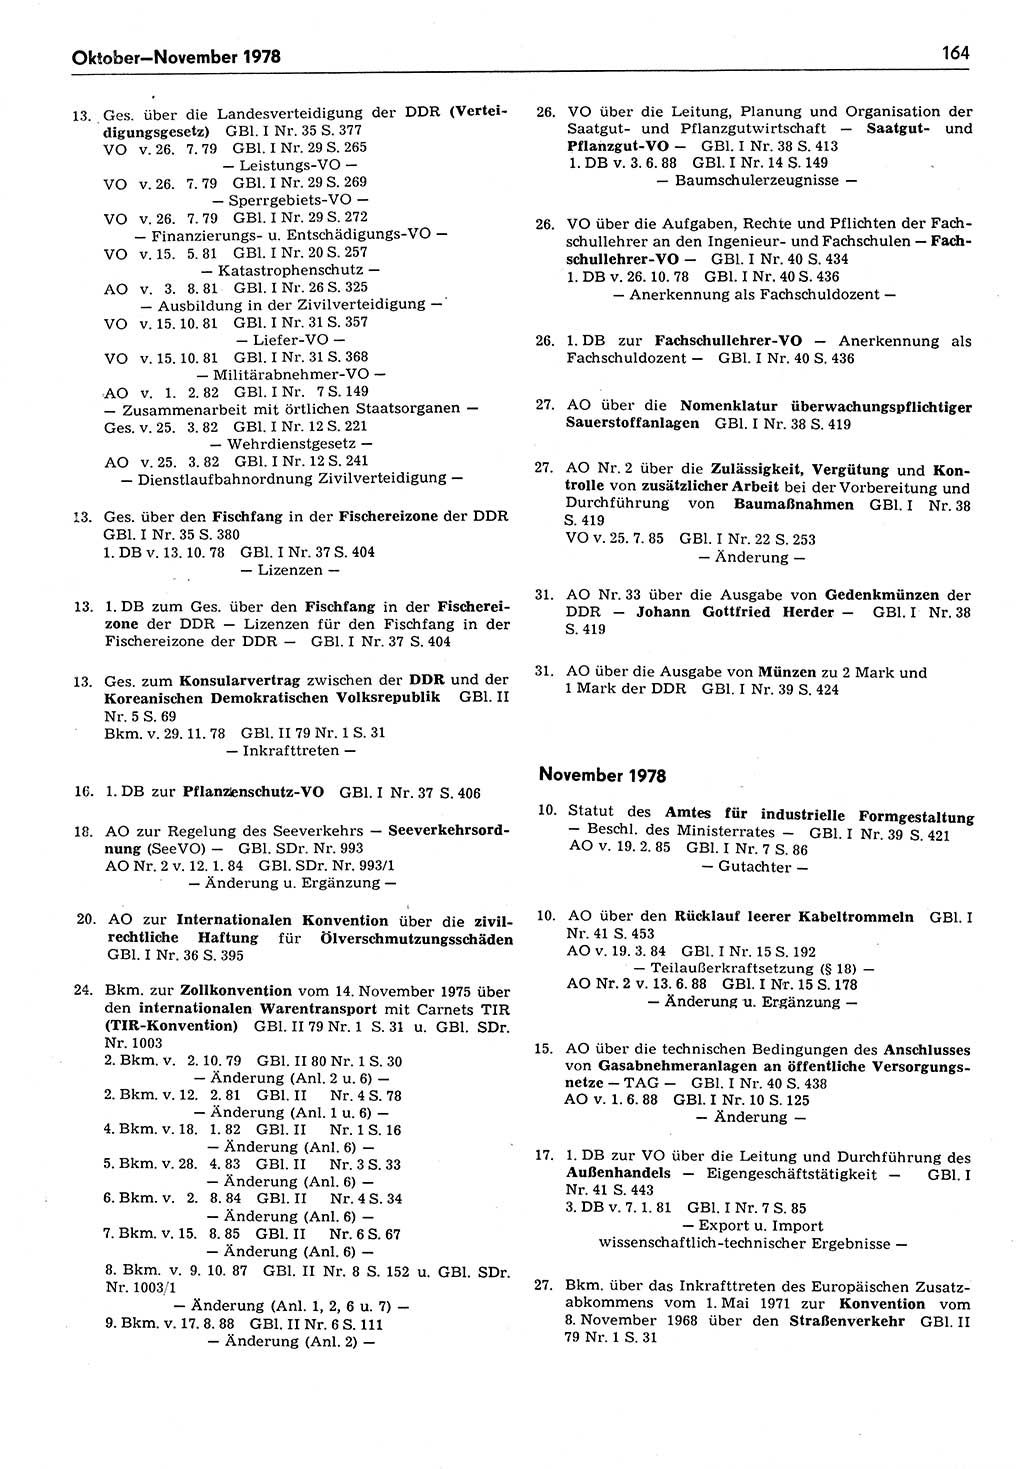 Das geltende Recht der Deutschen Demokratischen Republik (DDR) 1949-1988, Seite 164 (Gelt. R. DDR 1949-1988, S. 164)